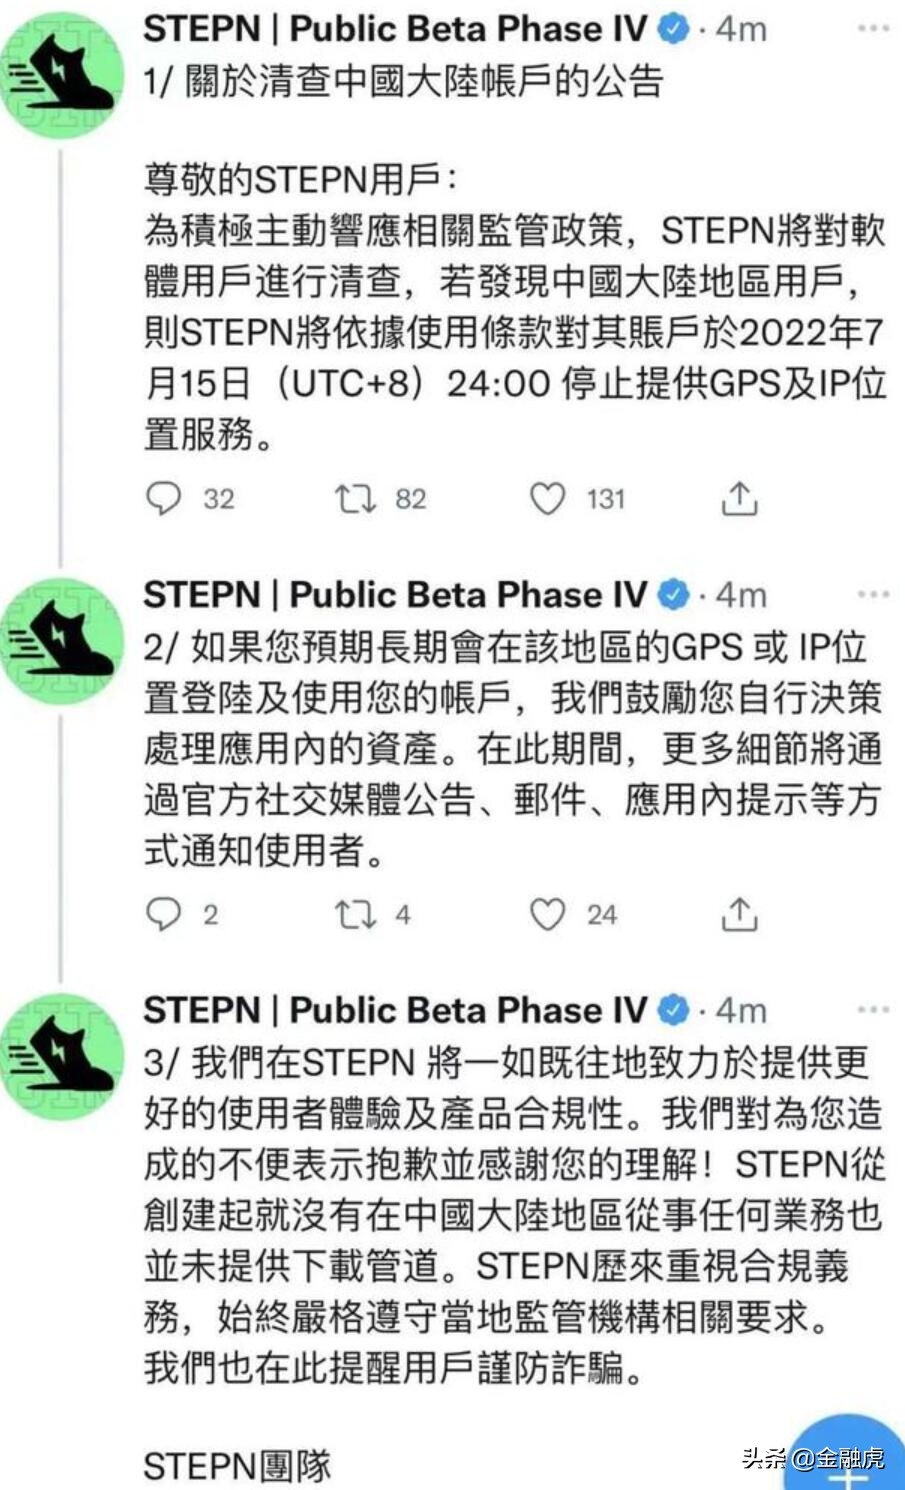 币圈跑鞋项目STEPN清退中国大陆账户：代币近期暴跌 被疑庞氏骗局